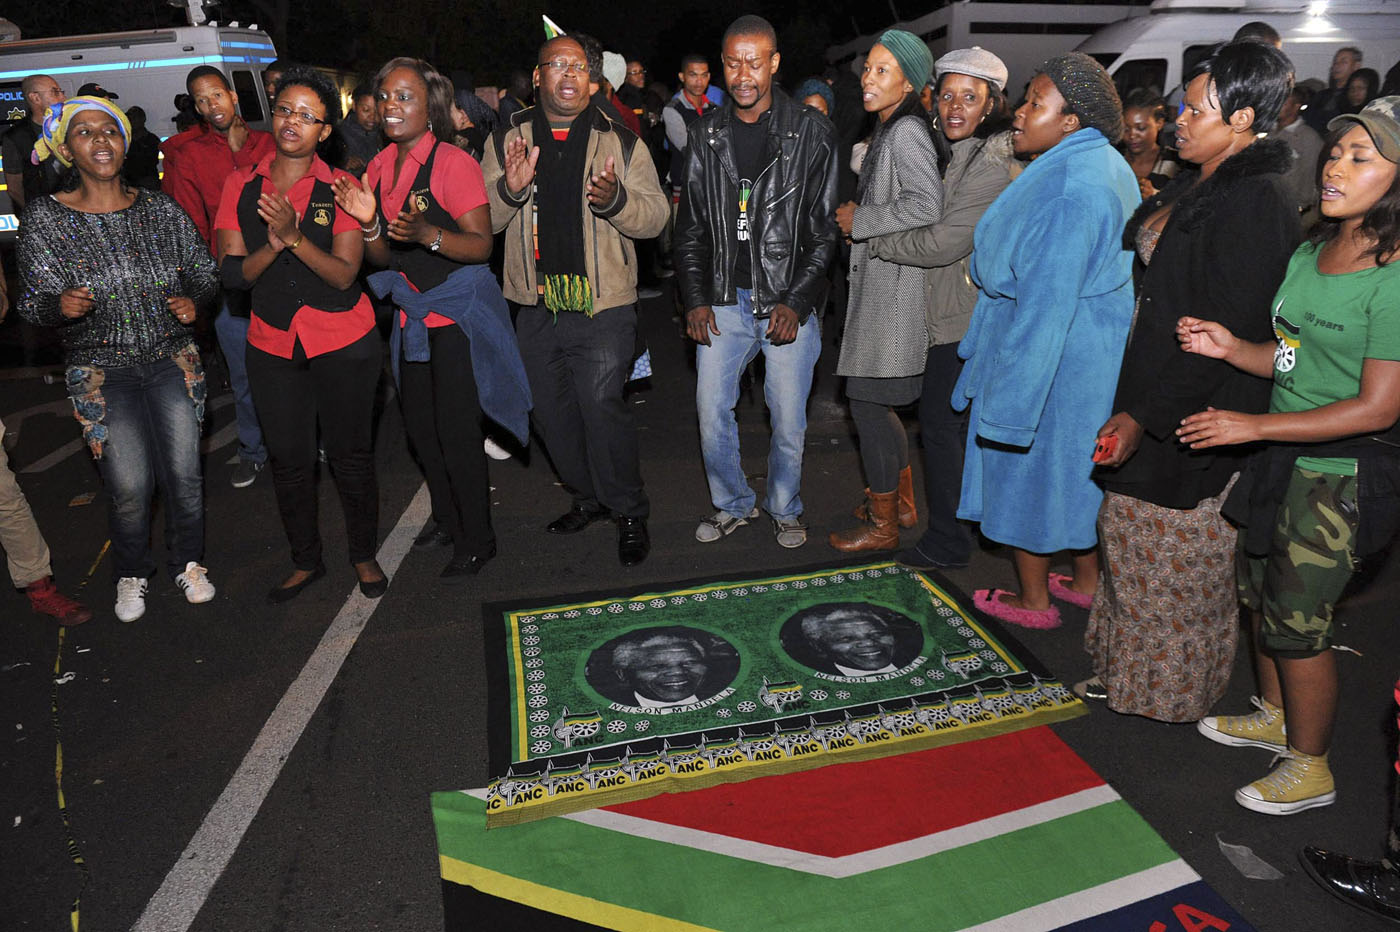 Cantos y danzas frente a la casa de Mandela (Fotos y Video)